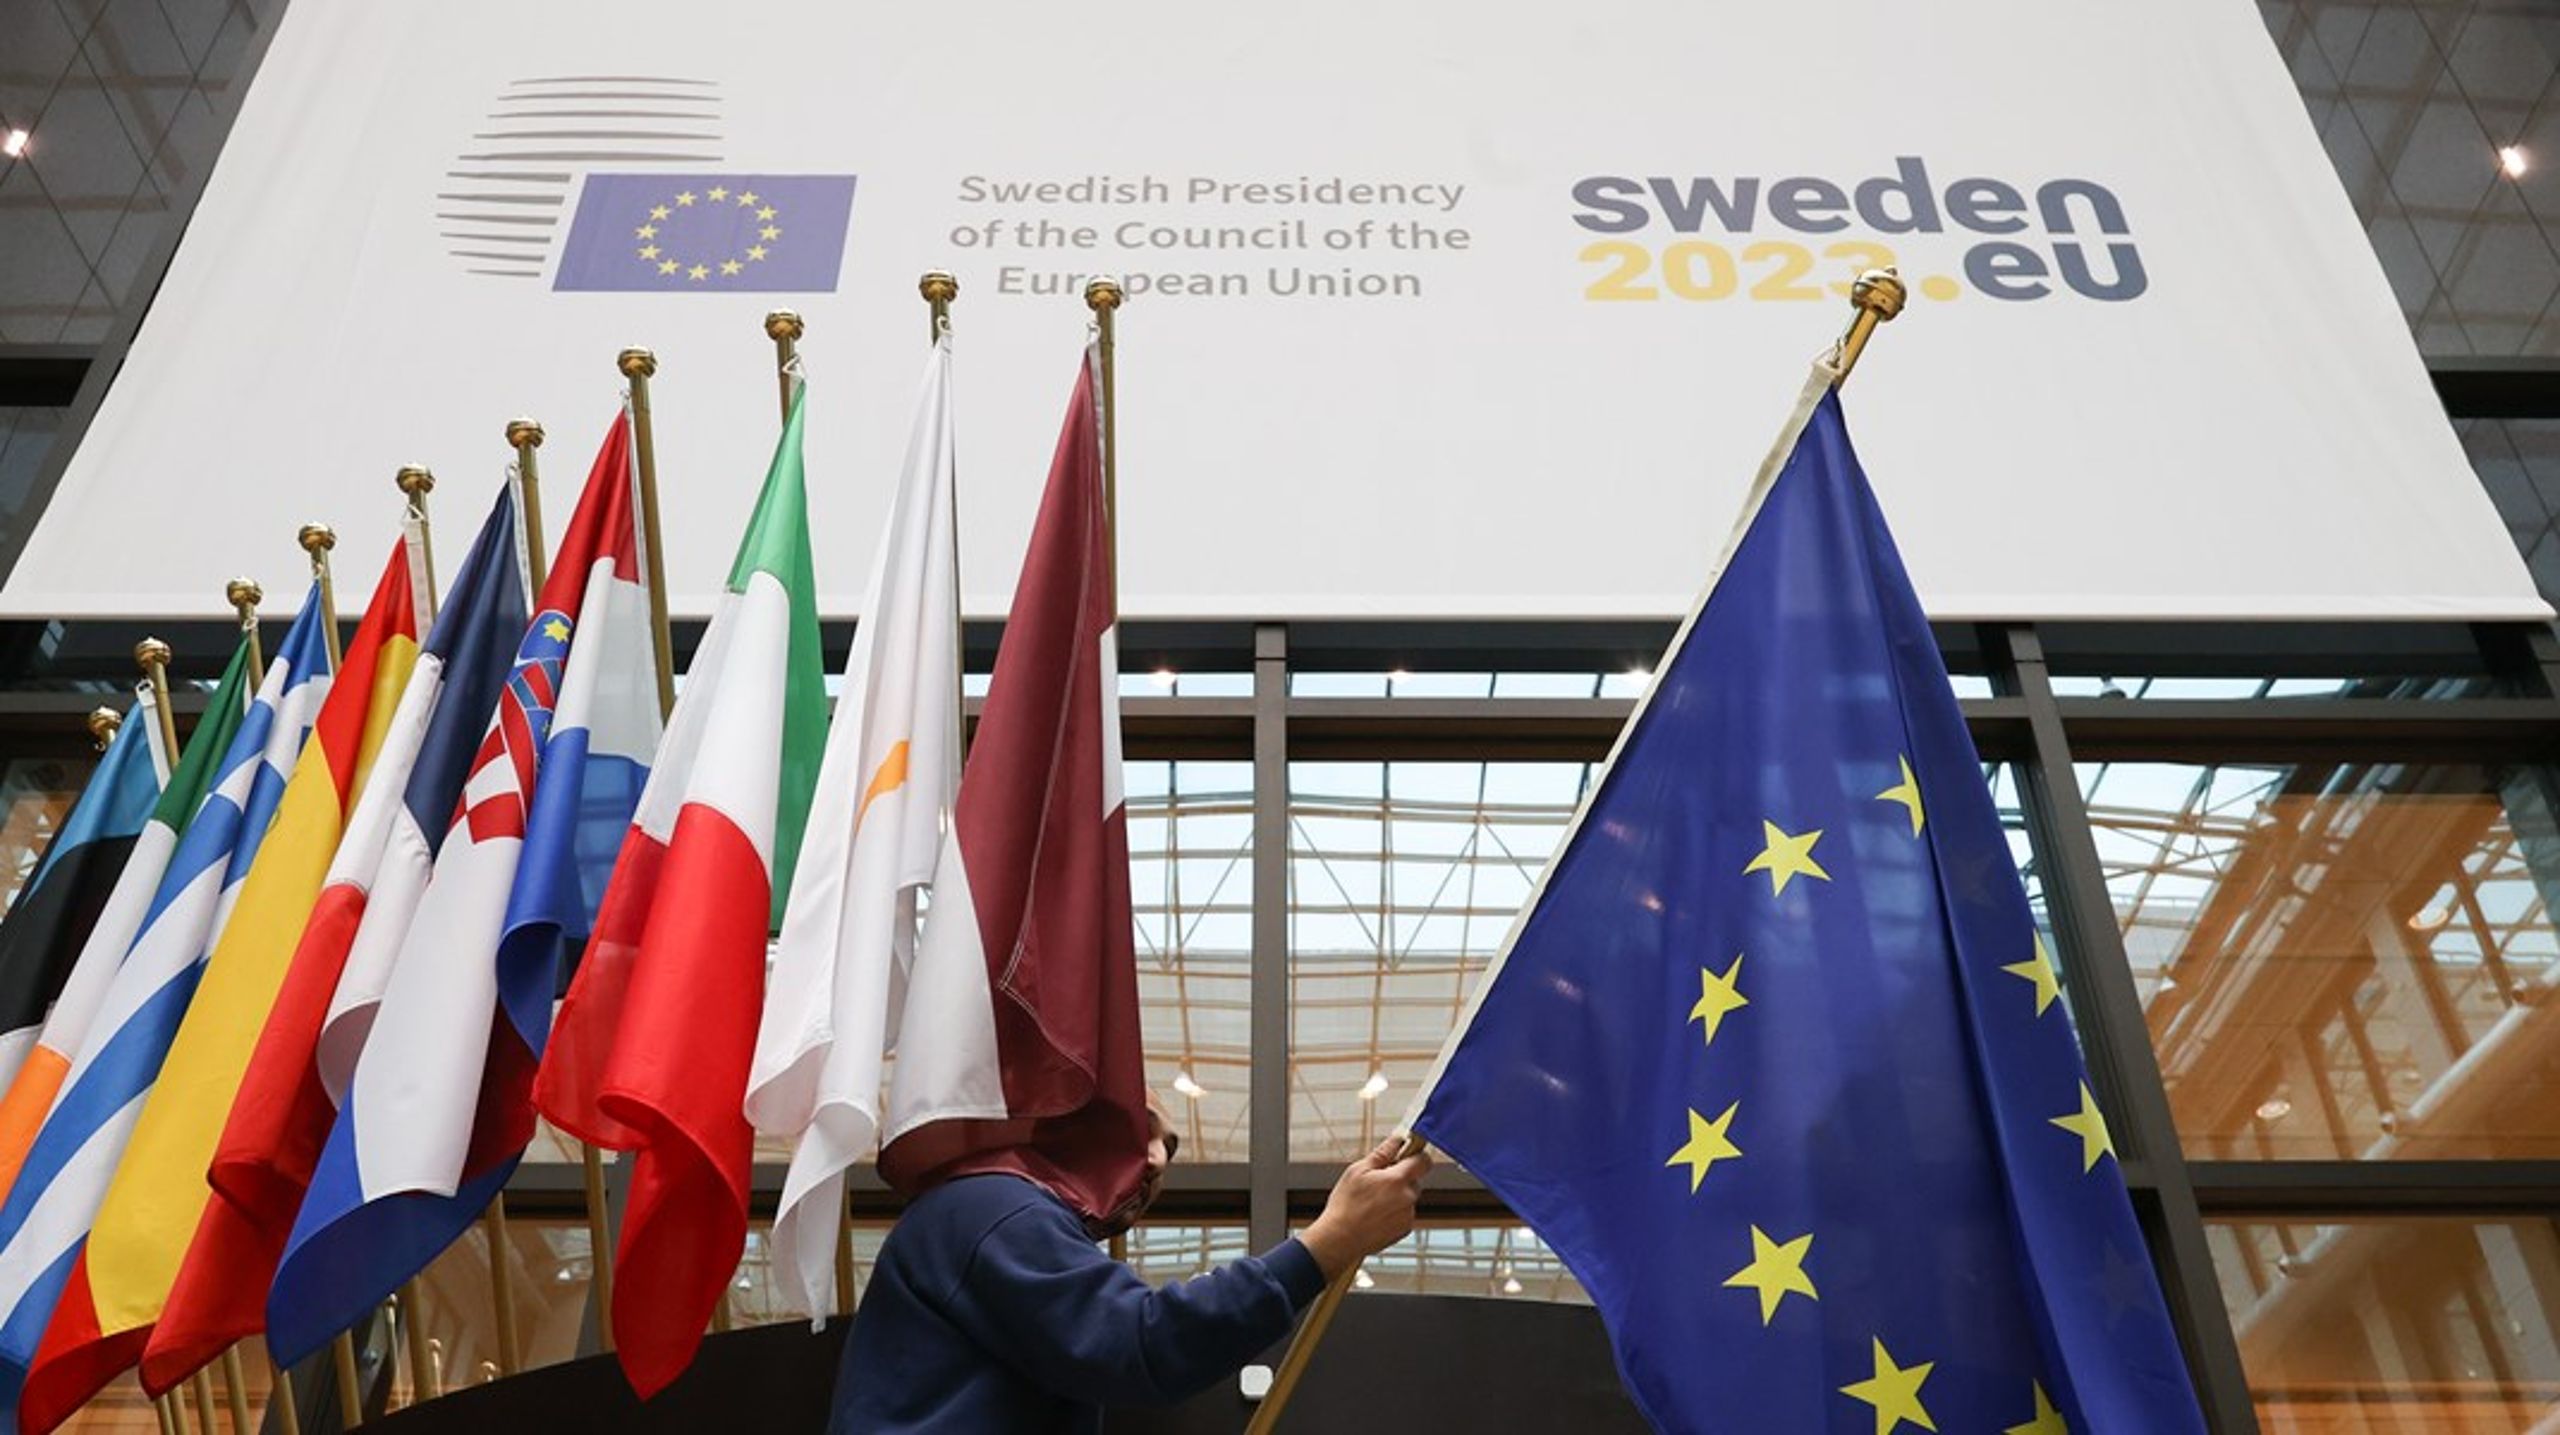 Effektivt och stabilt är några av beskrivningarna på det svenska EU-ordförandeskapet som är inne på sina allra sista dagar.&nbsp;